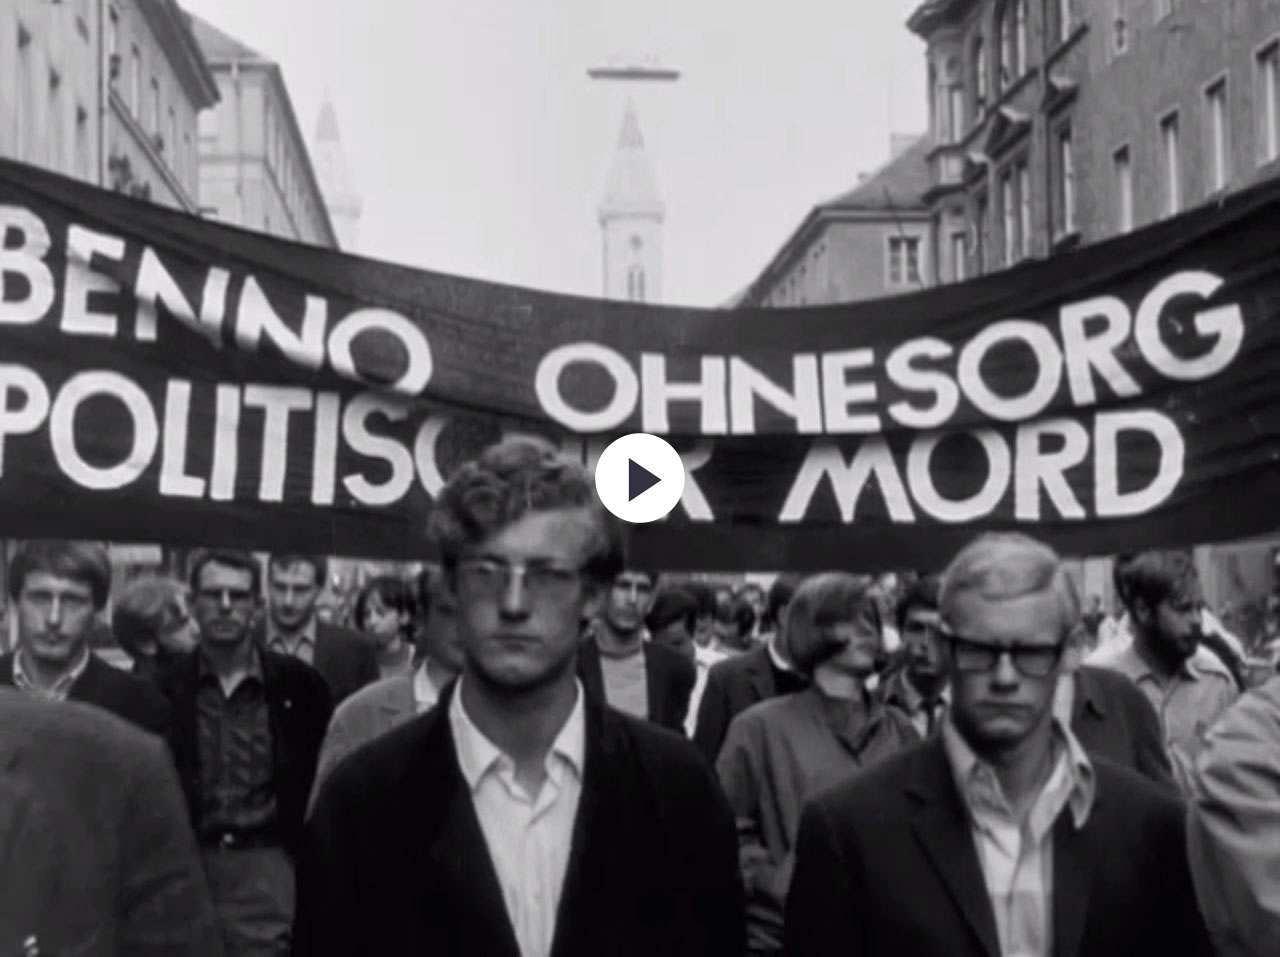 Die UFA-Wochenschau berichtet über die Studentendemonstrationen in zahlreichen westdeutschen Städten und das Attentat auf Rudi Dutschke am 11. April 1968 durch den Hilfsarbeiter Josef Bachmann.